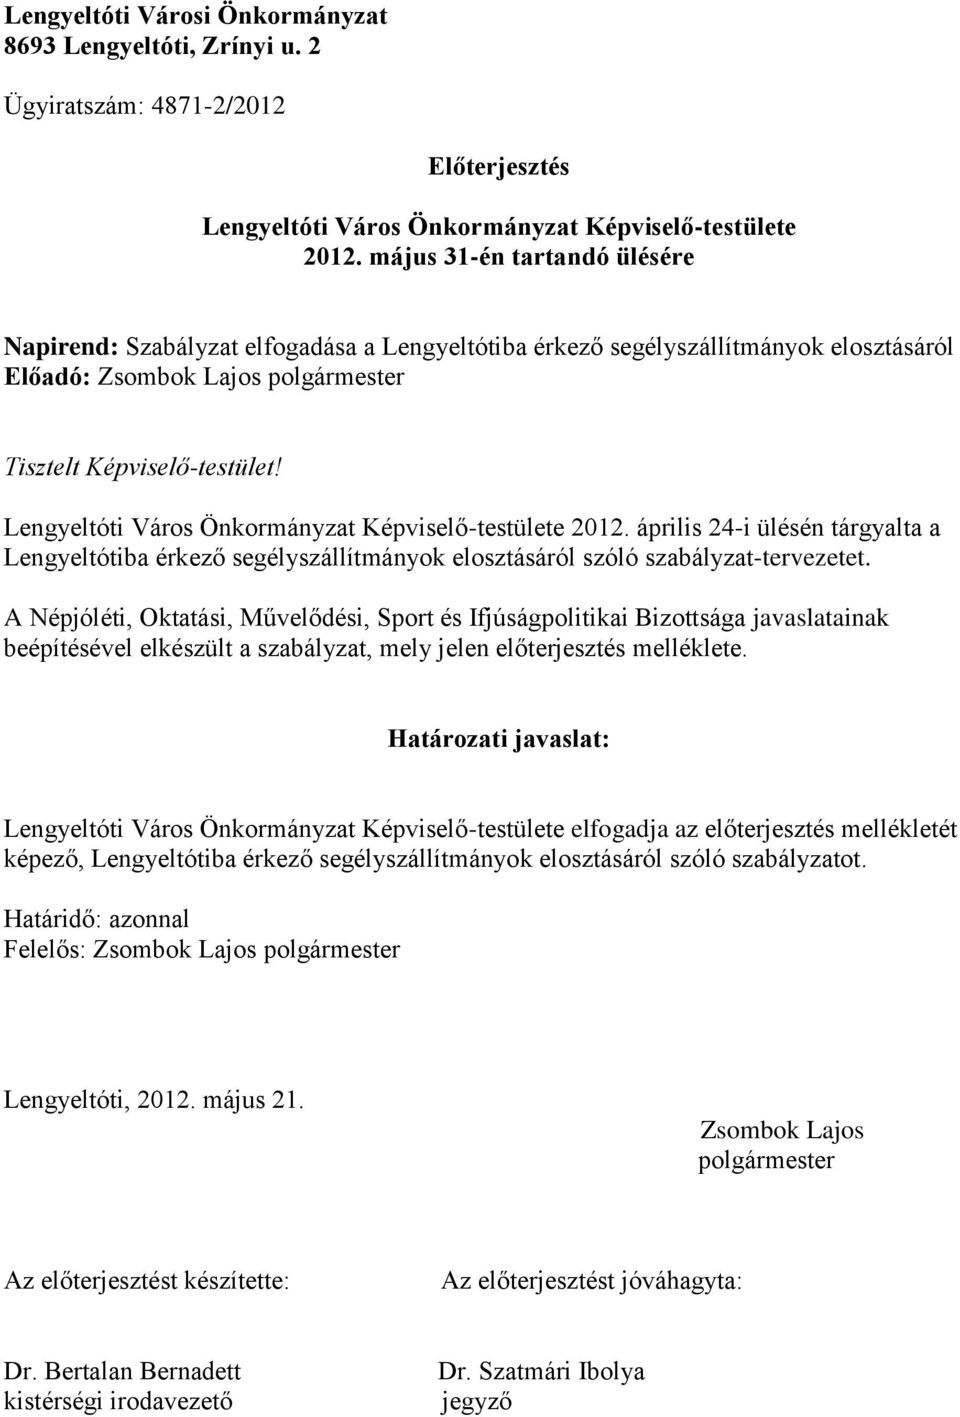 Lengyeltóti Város Önkormányzat Képviselő-testülete 2012. április 24-i ülésén tárgyalta a Lengyeltótiba érkező segélyszállítmányok elosztásáról szóló szabályzat-tervezetet.